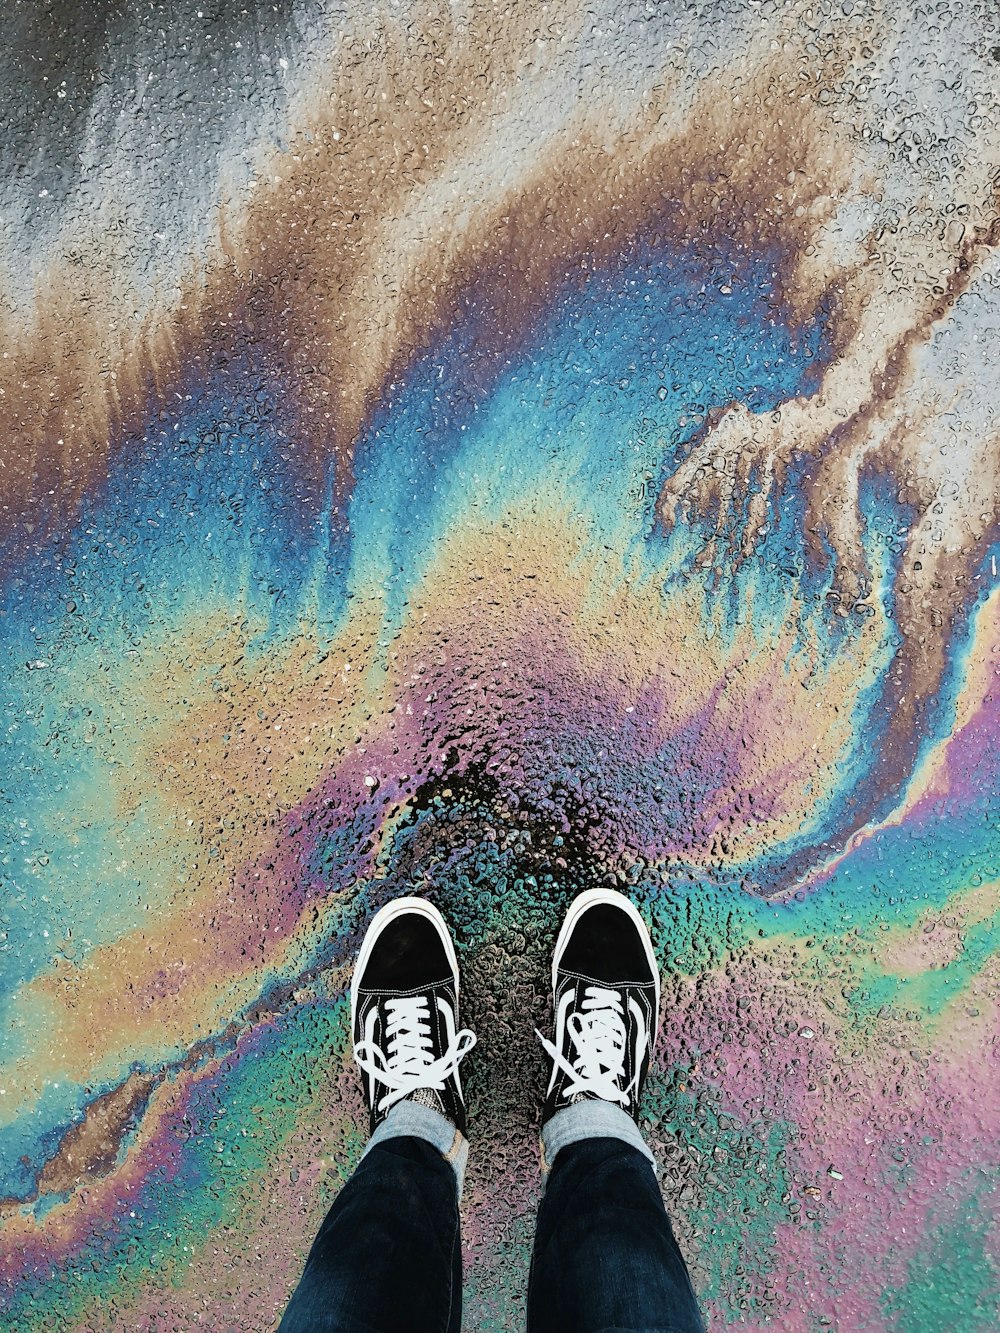 Persona de pie sobre una superficie derramada de petróleo